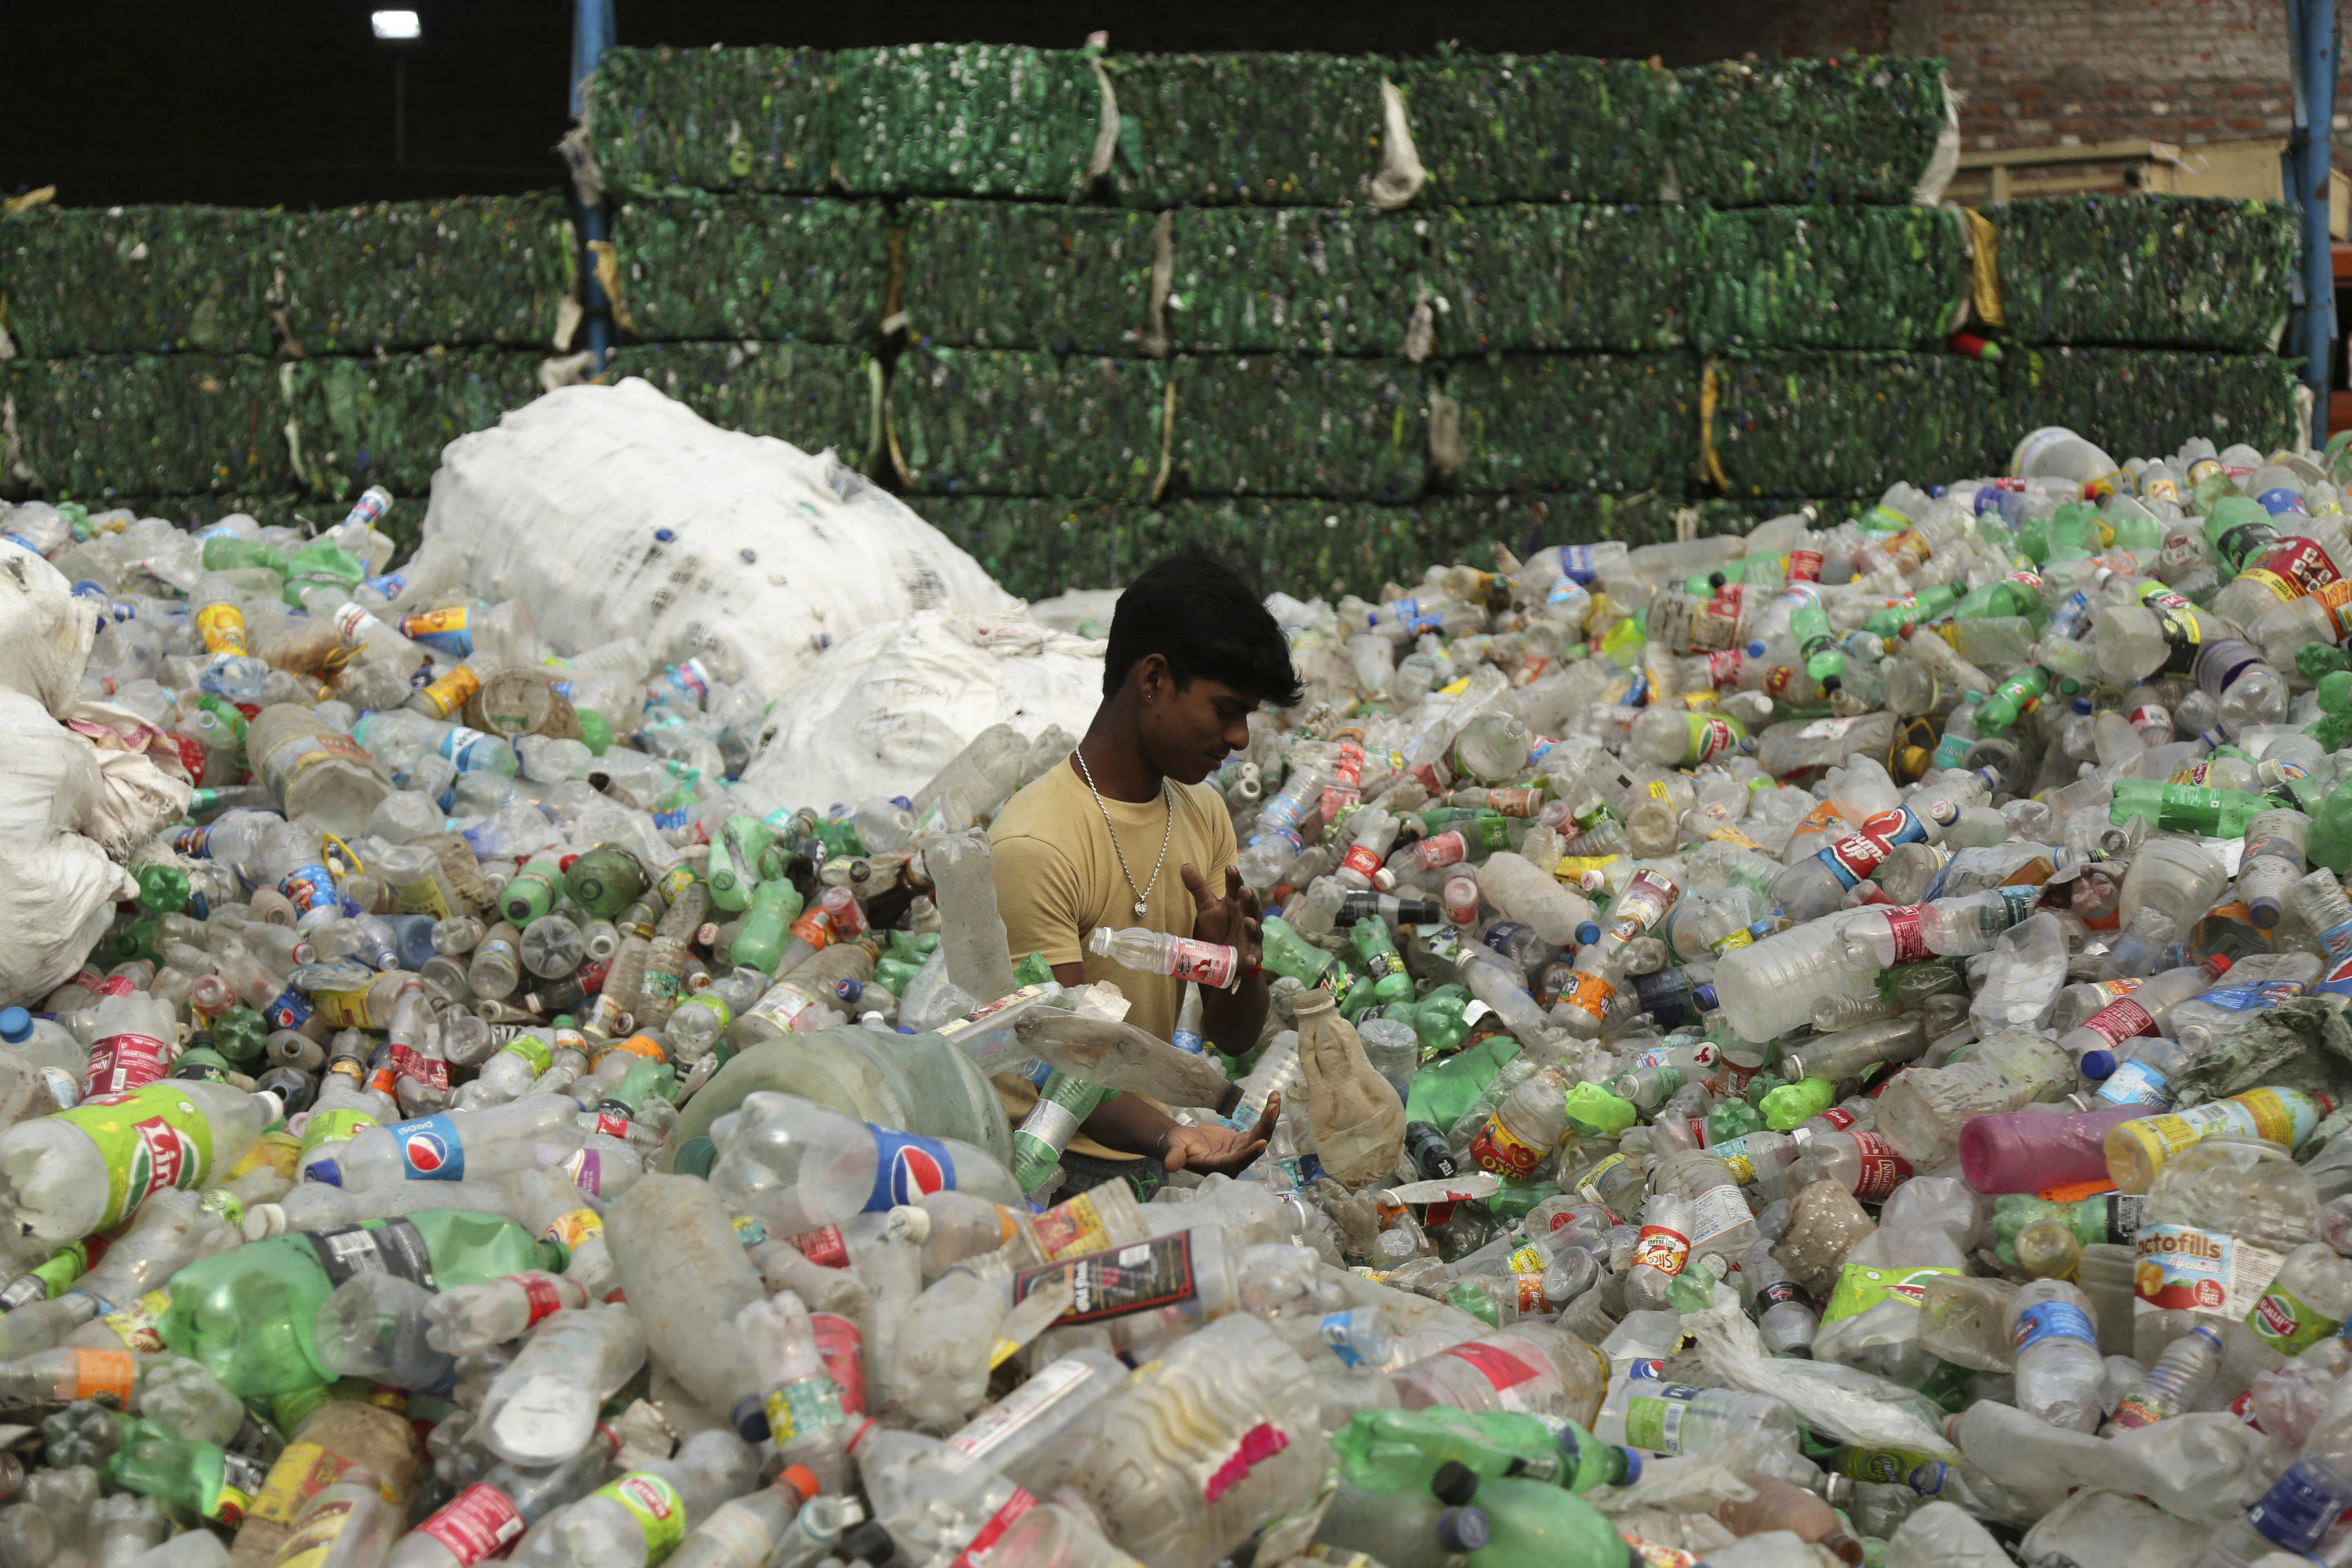 Bombay castiga el uso de bolsas y botellas de plástico con multas y penas de cárcel